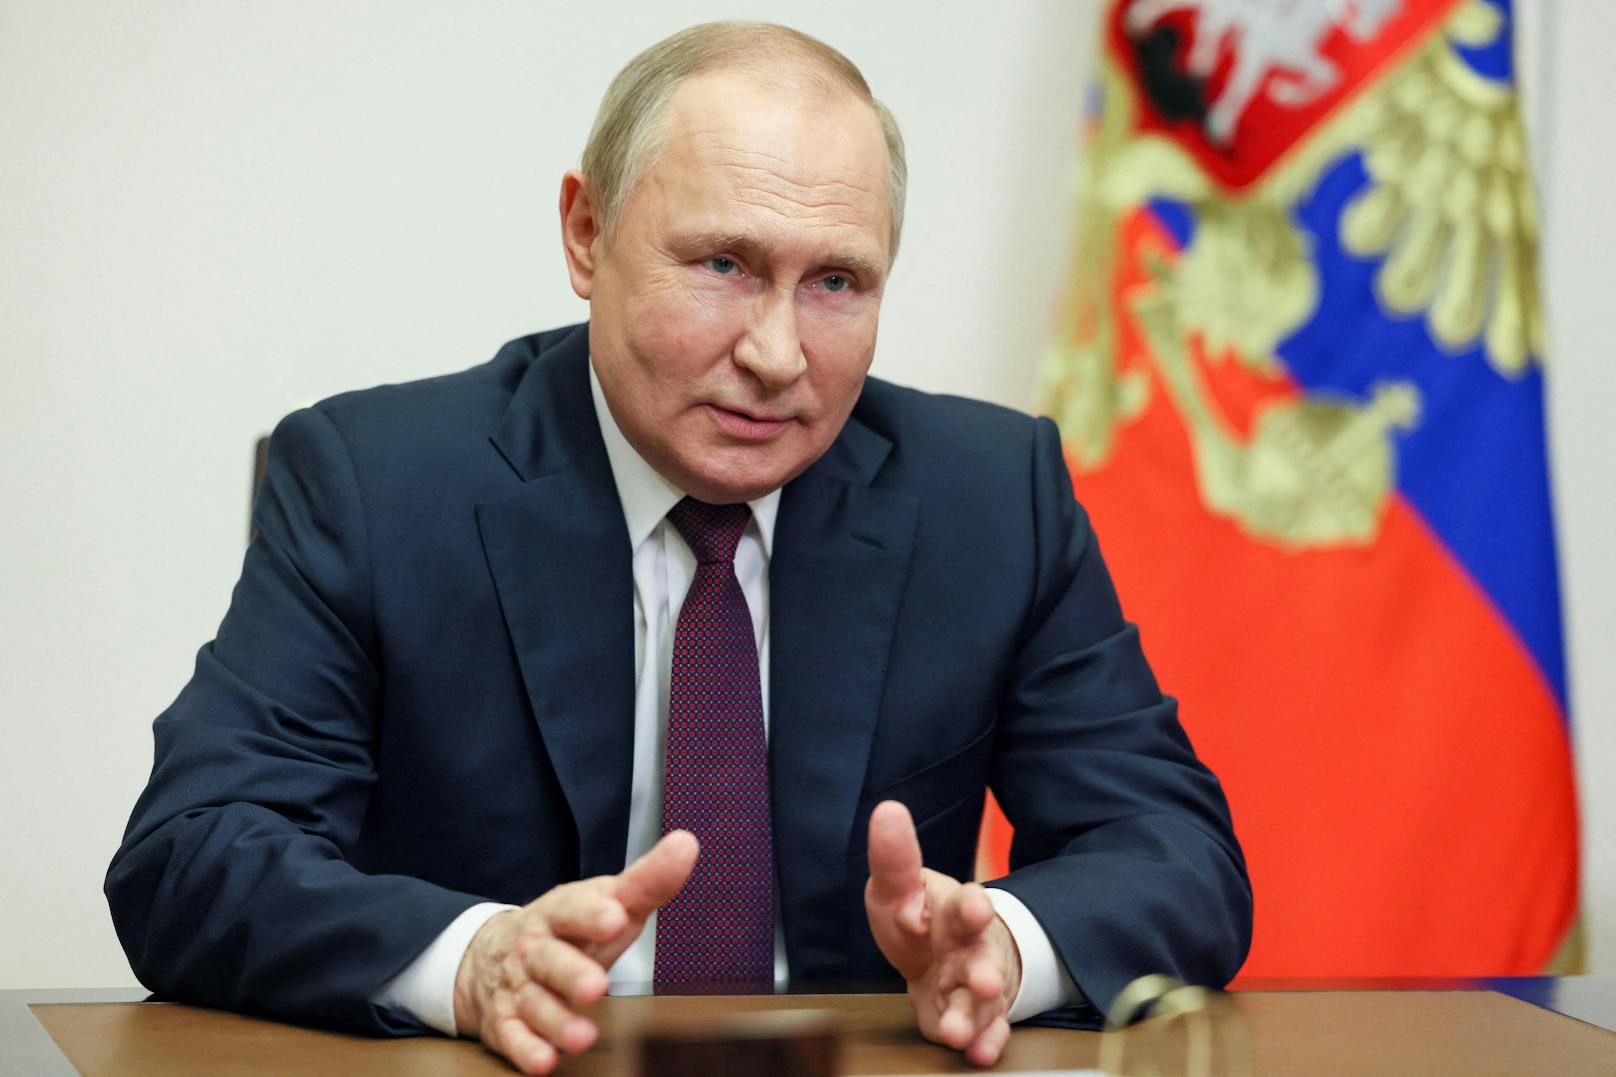 Wladimir Putin soll am Freitag beim Wirtschaftsforum eine "sehr wichtige" Rede halten.